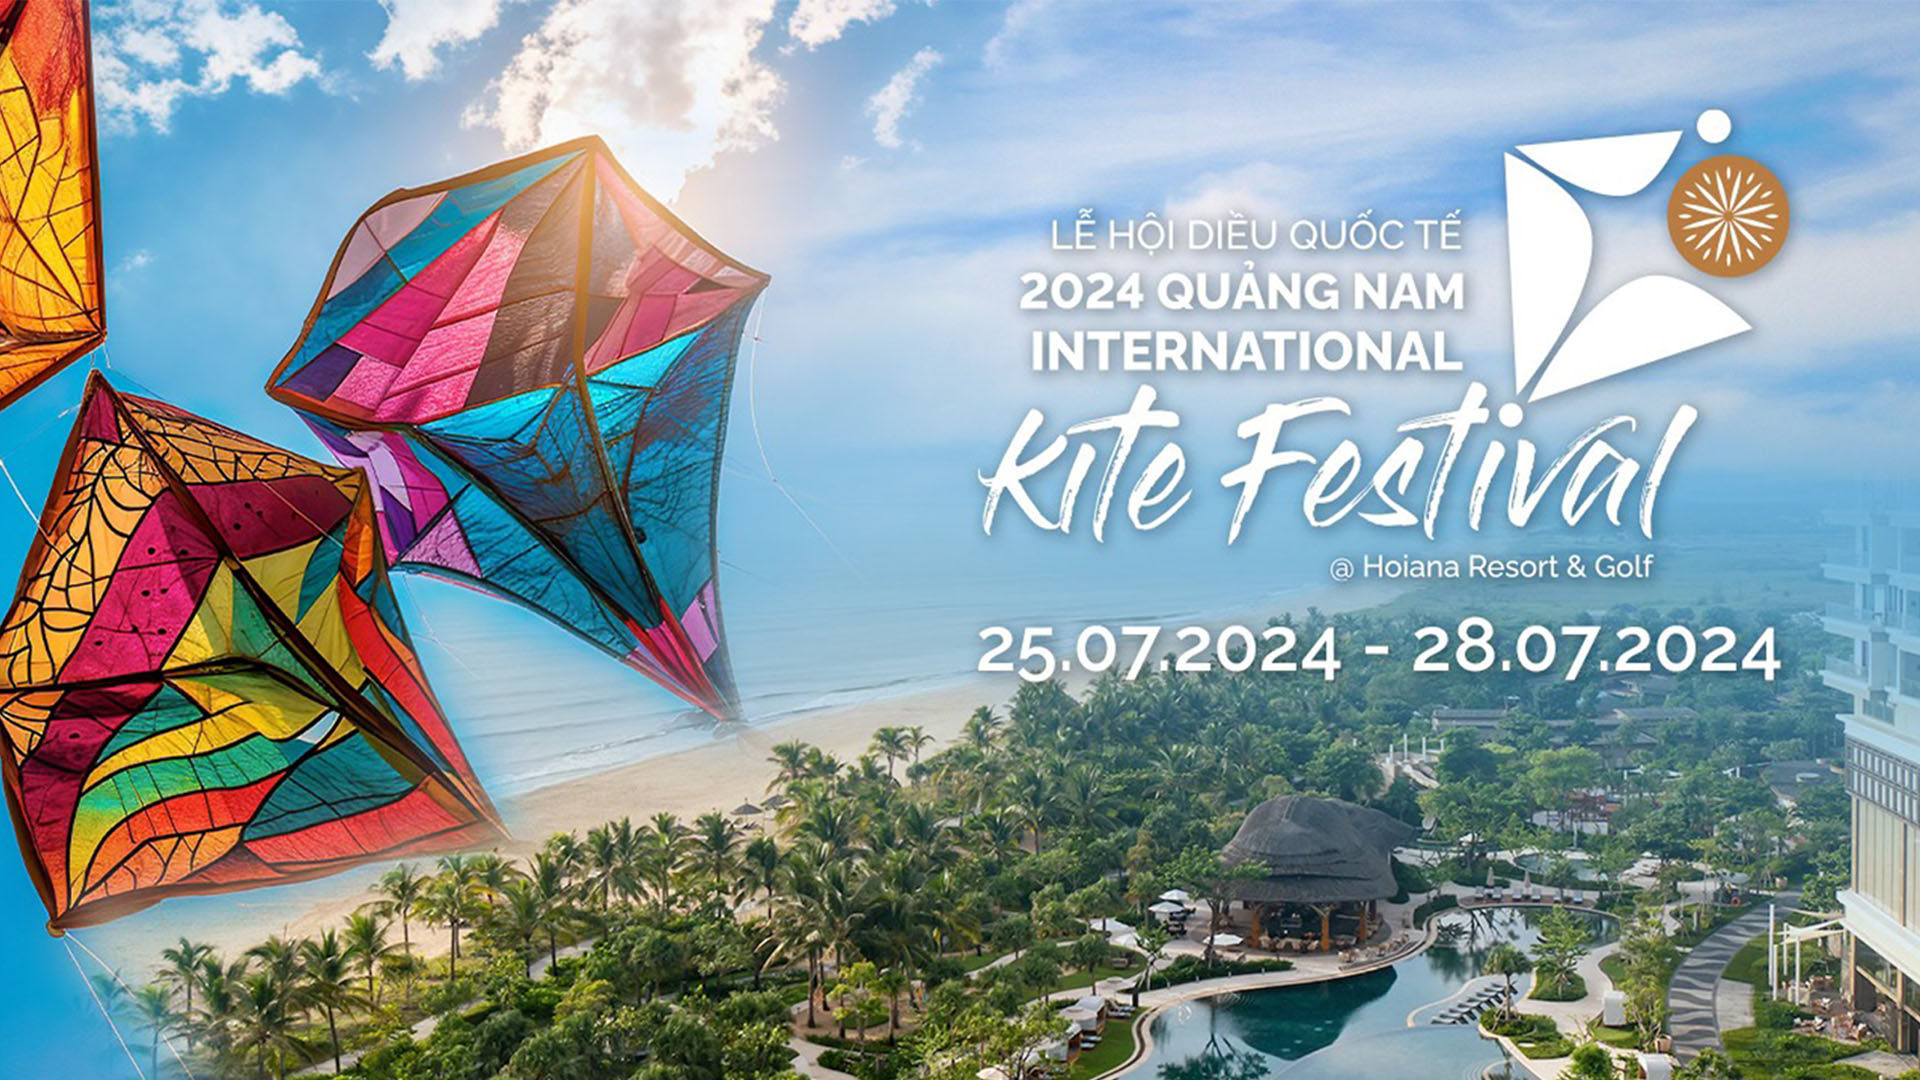 Hội An Resort & Golf thắp sáng bầu trời với Lễ hội Diều Quốc tế Việt Nam!